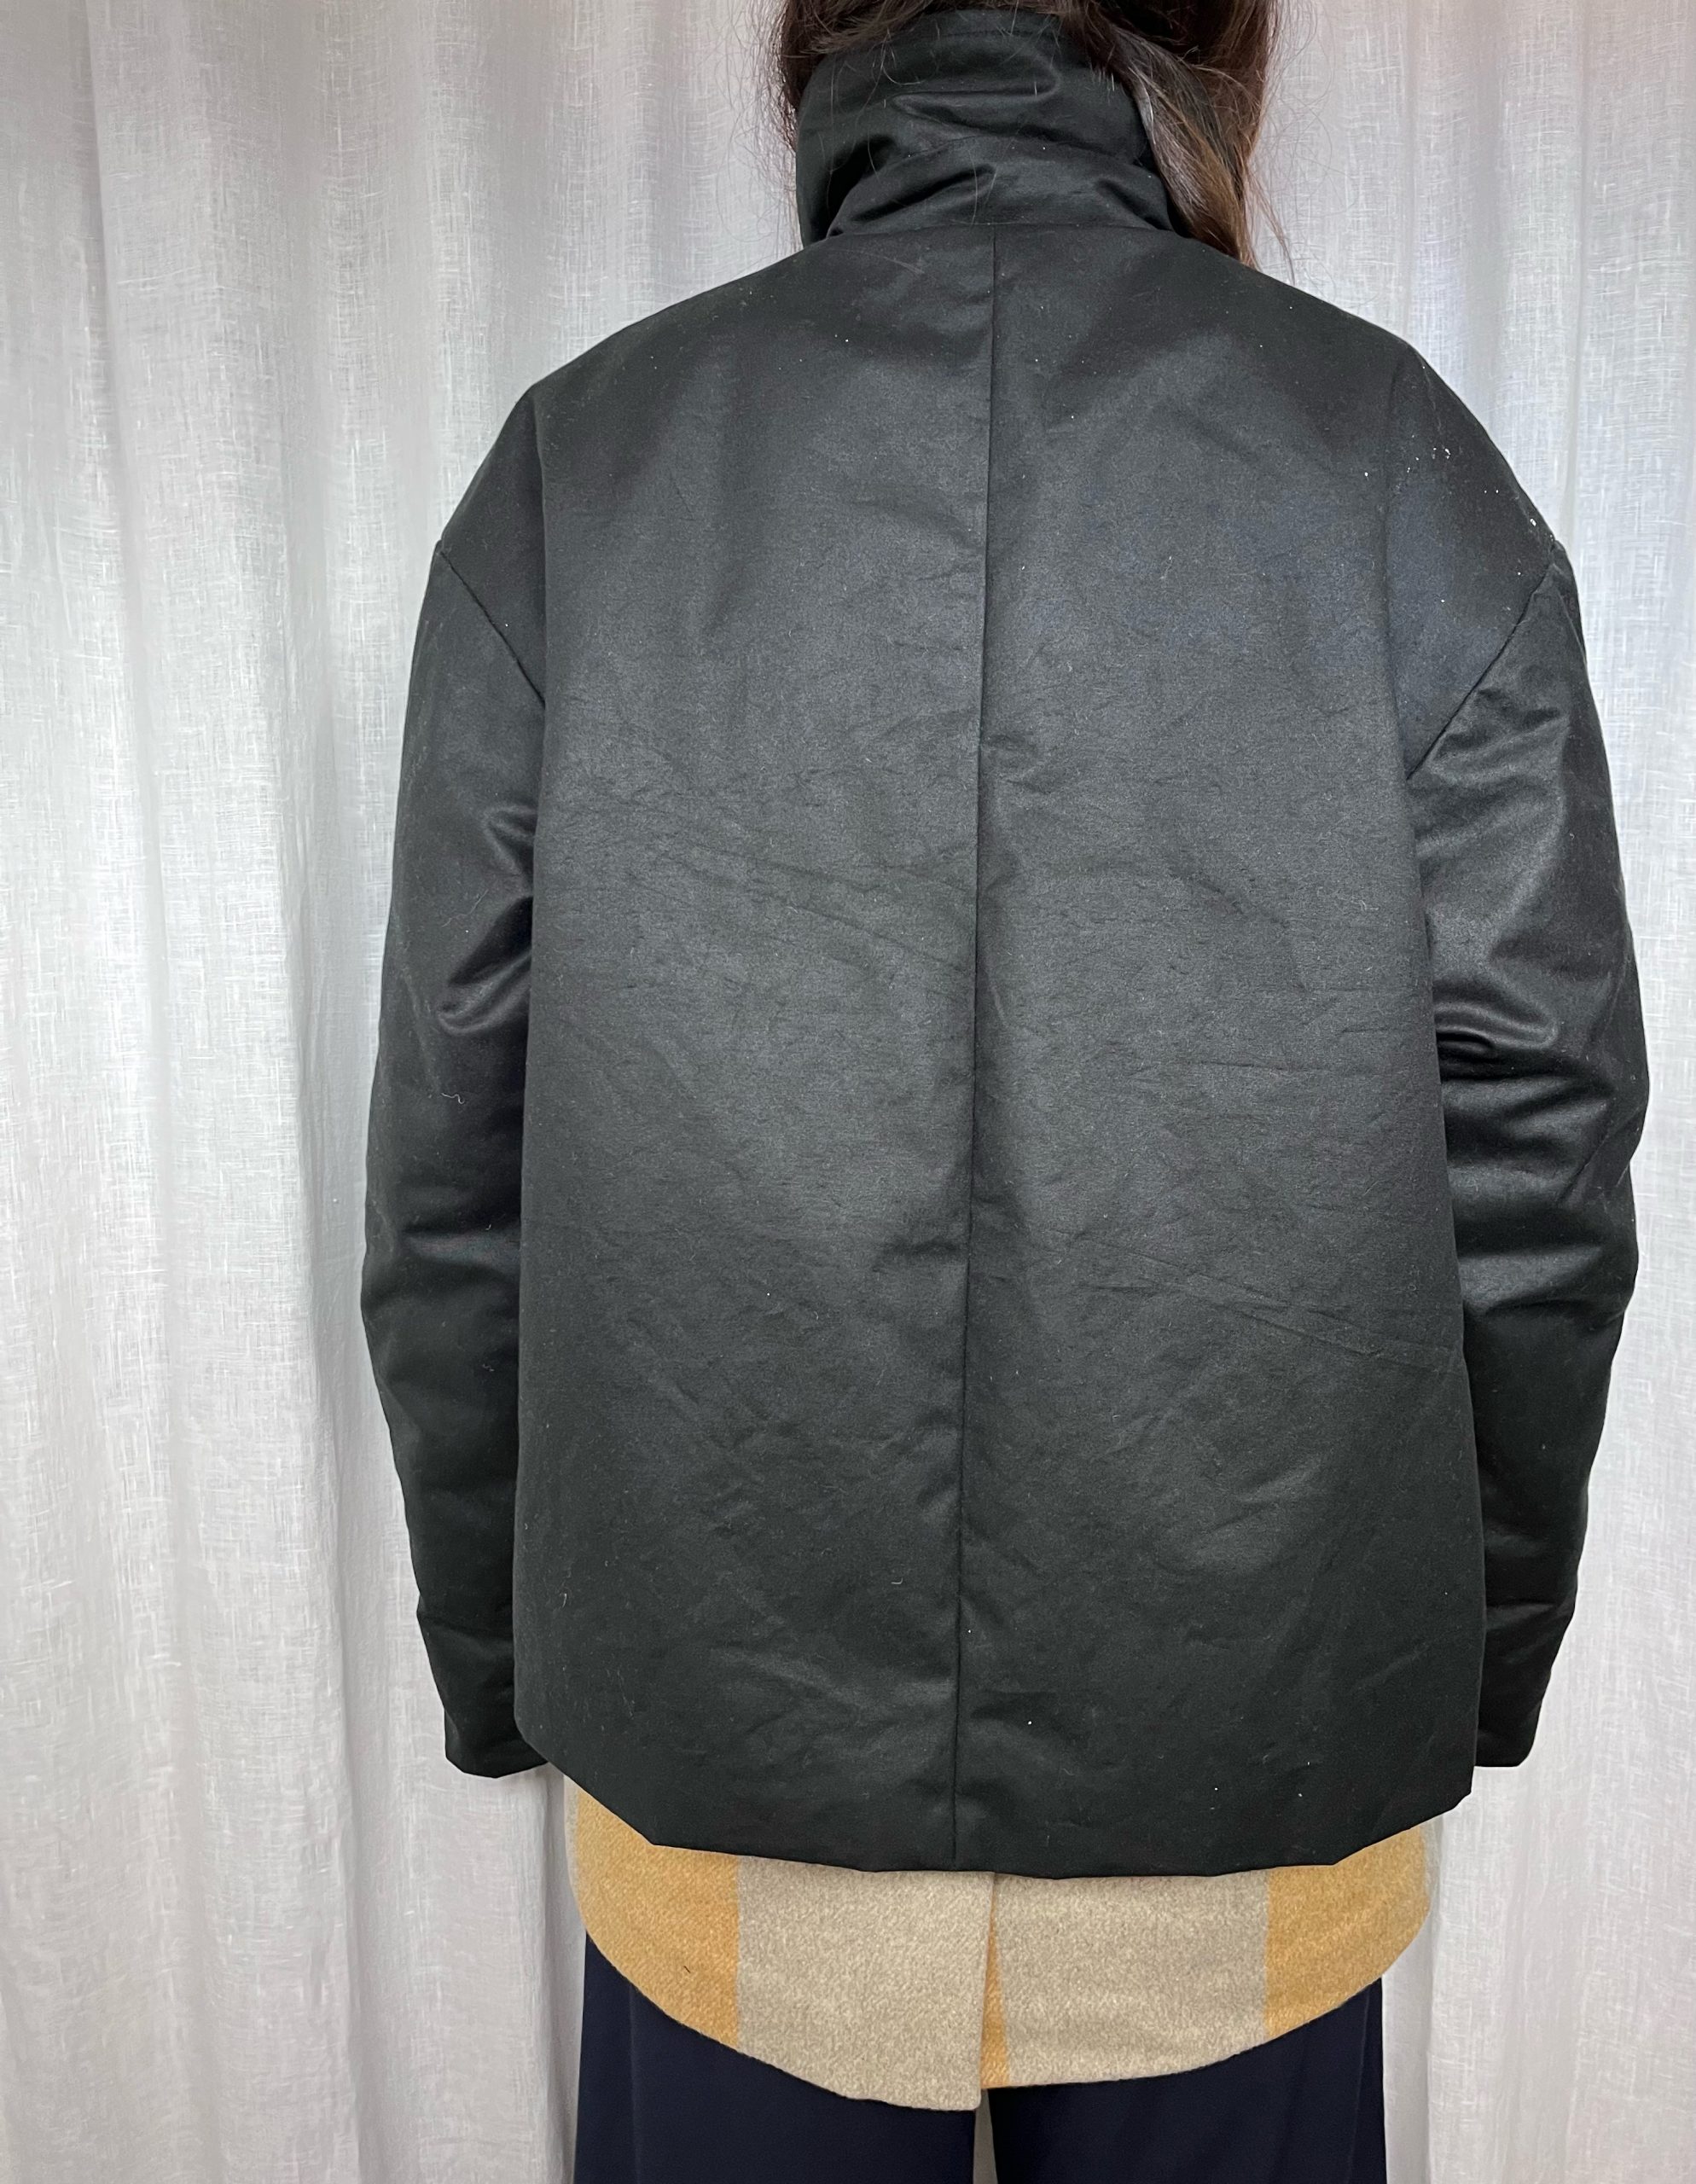 Vista de la espalda. Abrigo Unisex con doble capa. Una impermeable negra y una inferior en lana de cuadros mostaza